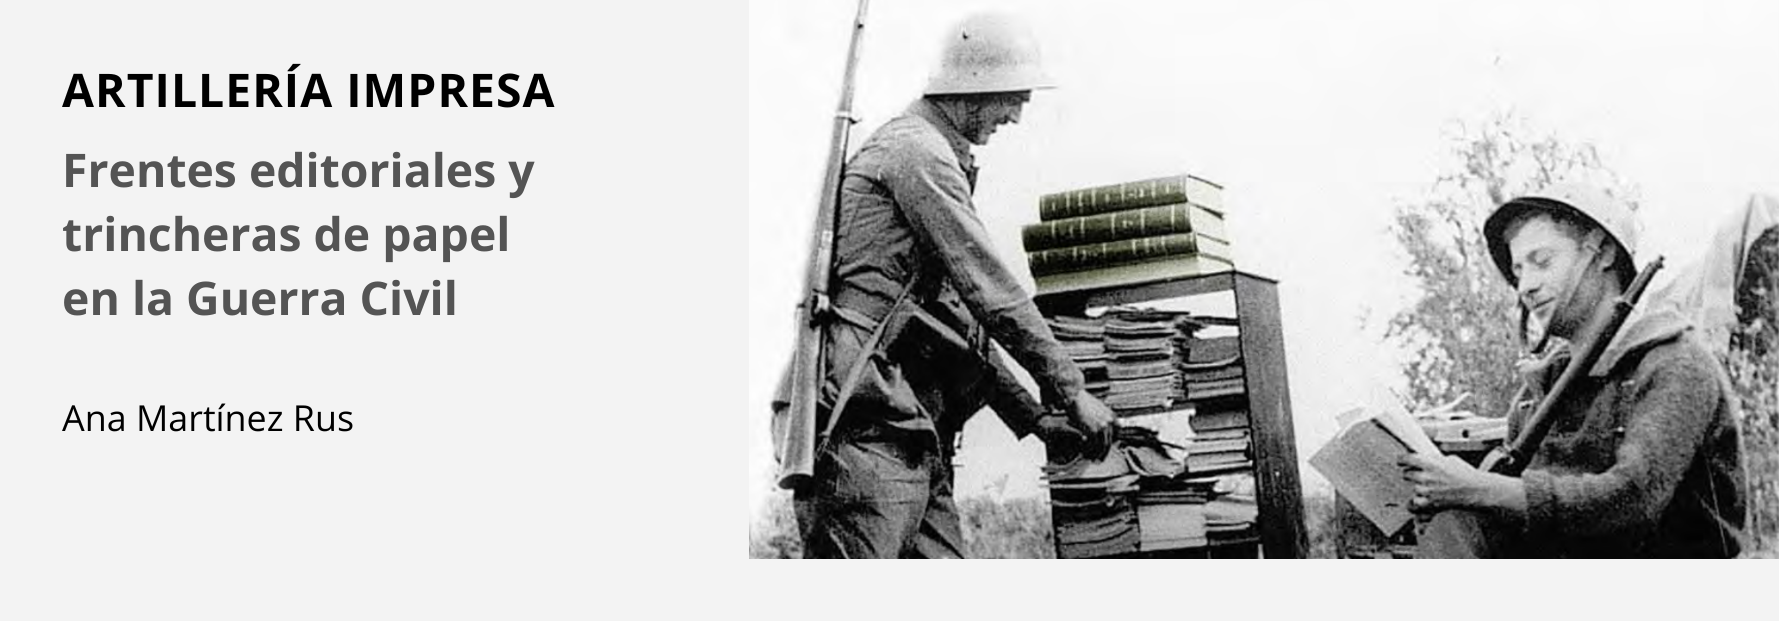 Se ha publicado recientemente el libro "Artillería impresa. Frentes editoriales y trincheras de papel en la Guerra Civil", de Ana Martínez Rus